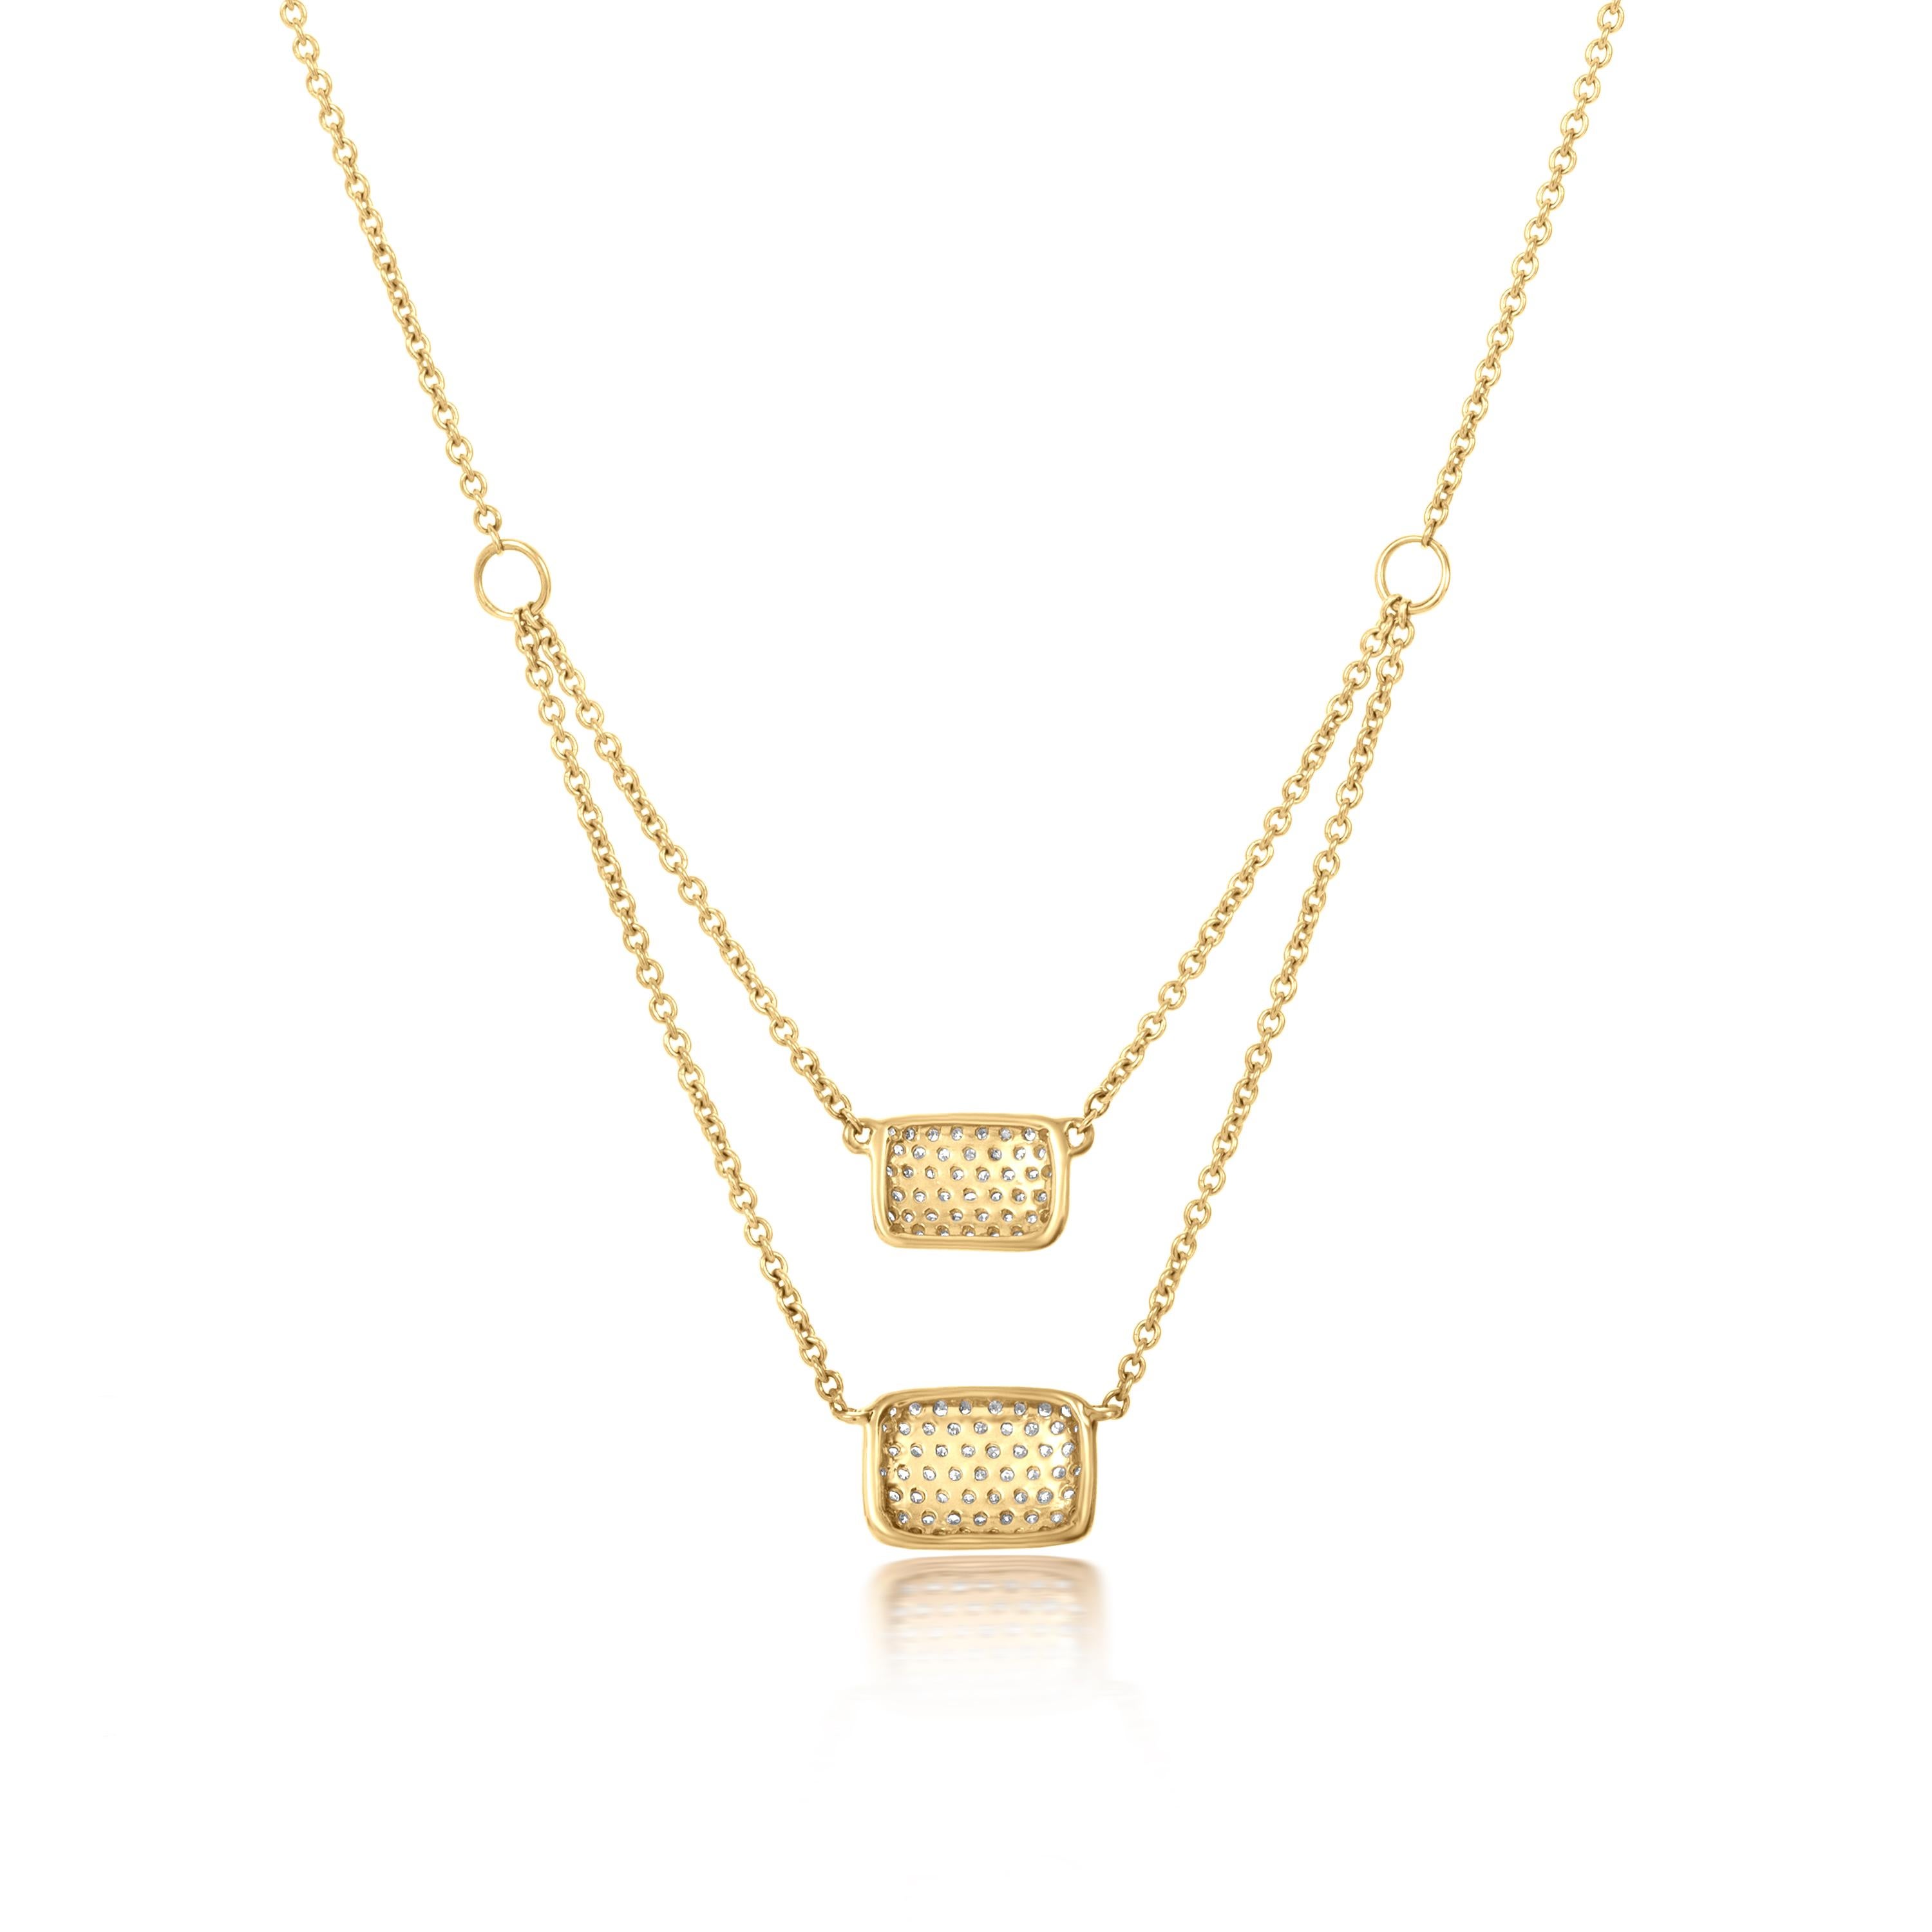 Diese doppelreihige, quadratische Luxle-Collierkette ist ein Unikat, das sorgfältig aus 14-karätigem Gelbgold gefertigt wurde. Diese Halskette besteht aus 0,29 Karat runden Diamanten im Einzelschliff, die perfekt ausgerichtet sind, um das Licht aus